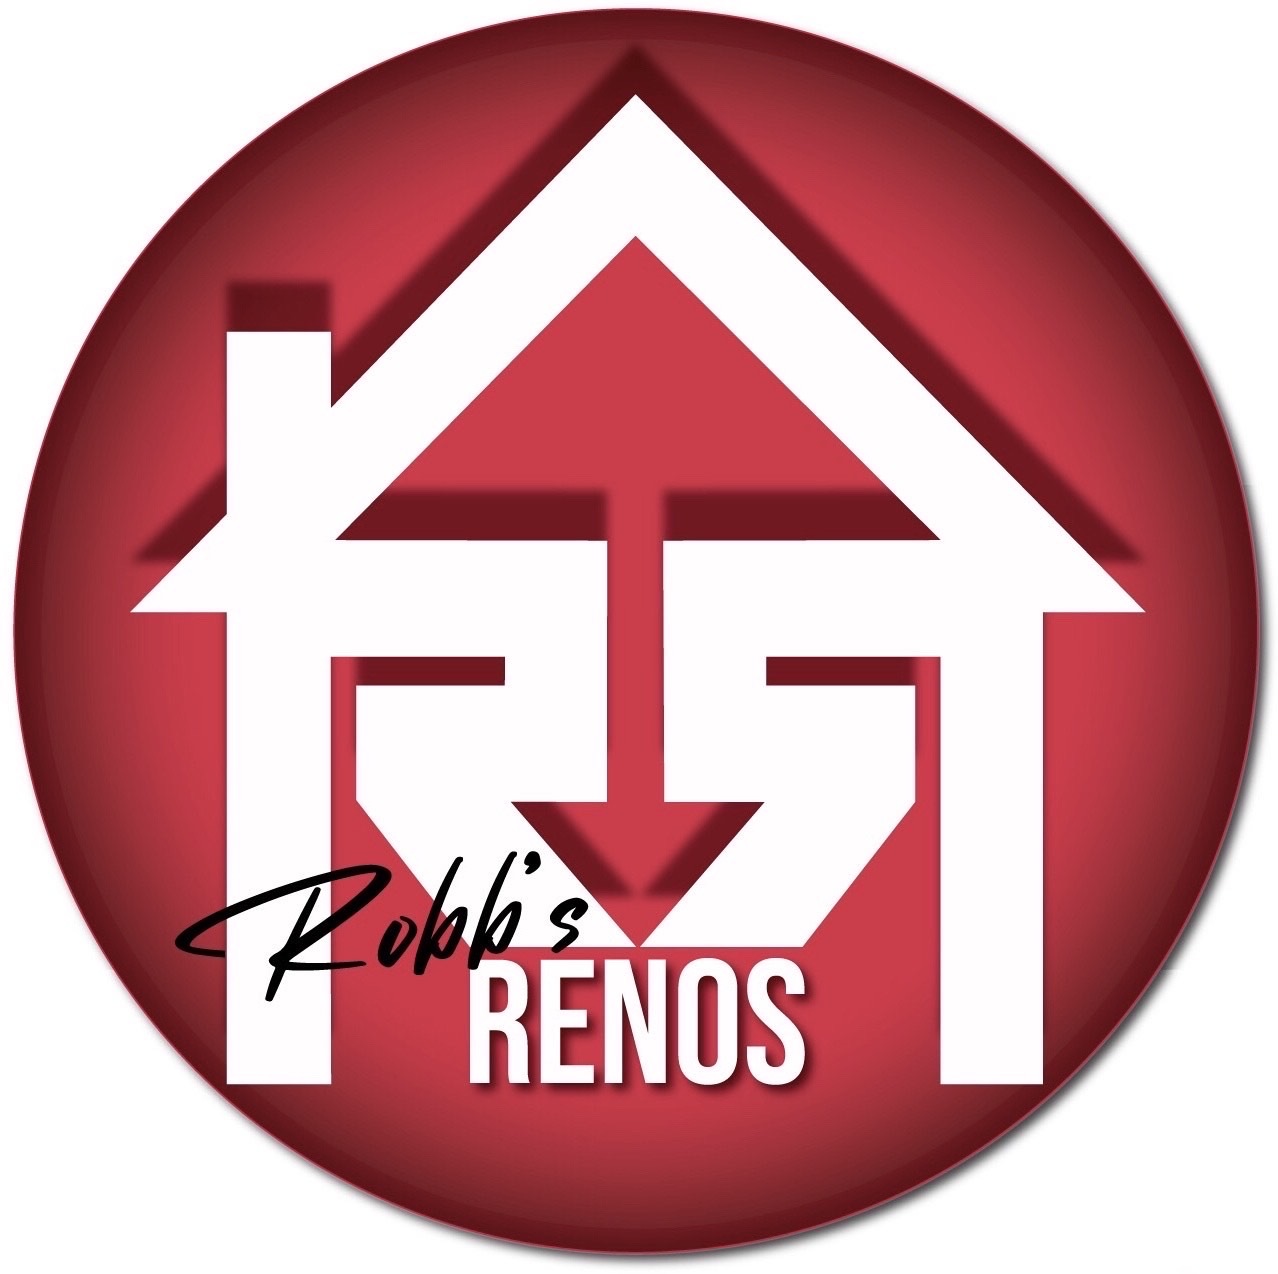 Robb’s Renos's logo